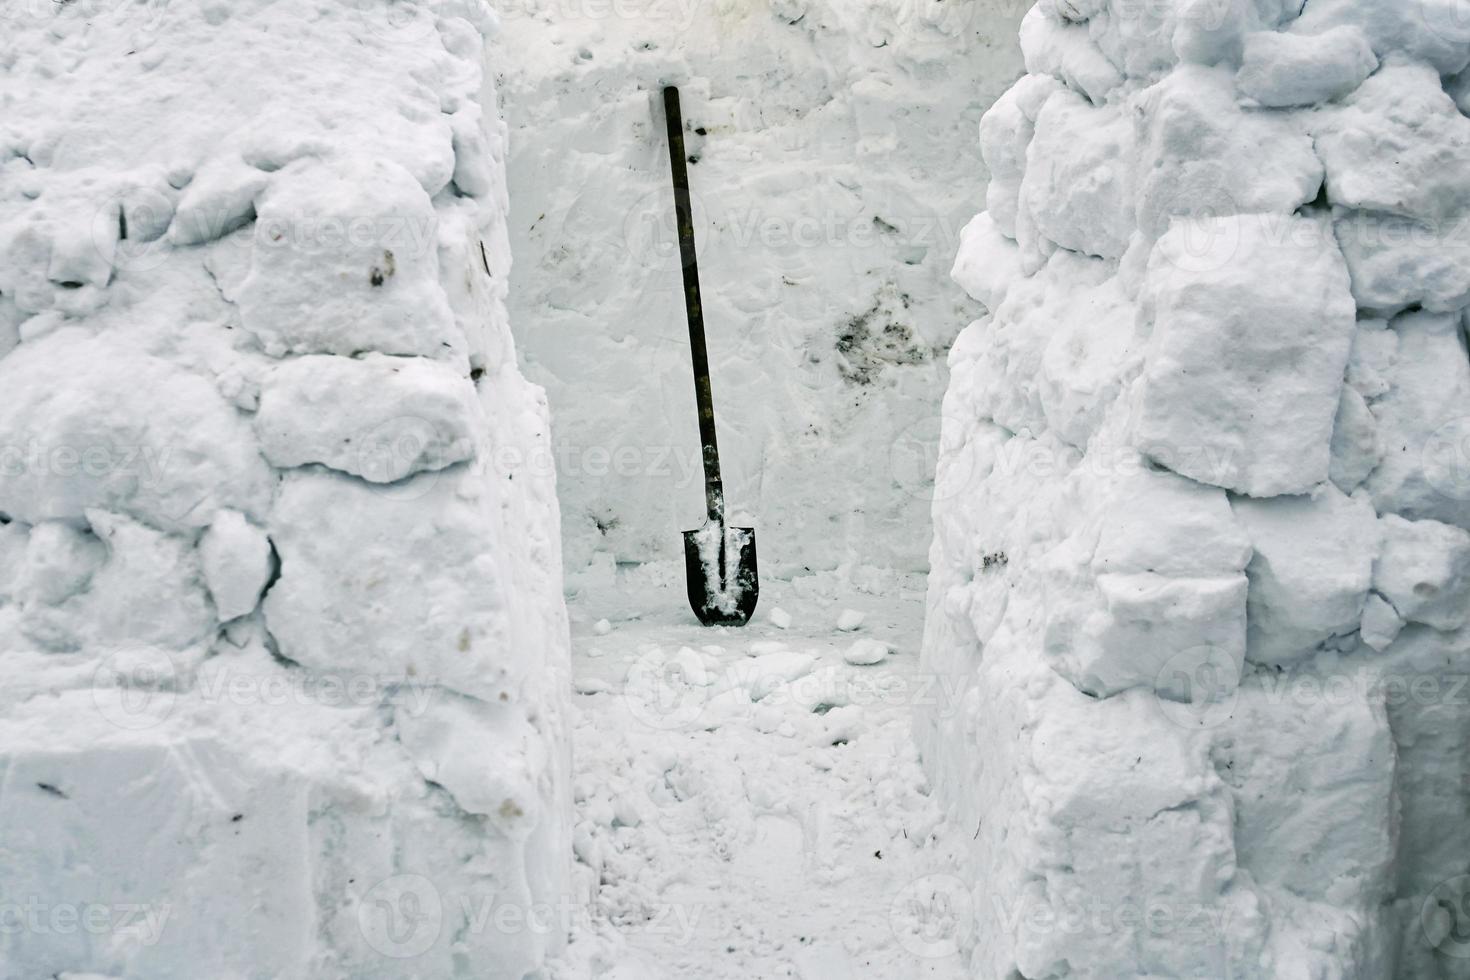 construcción de un iglú de casa de nieve a partir de ladrillos de nieve usando una pala foto